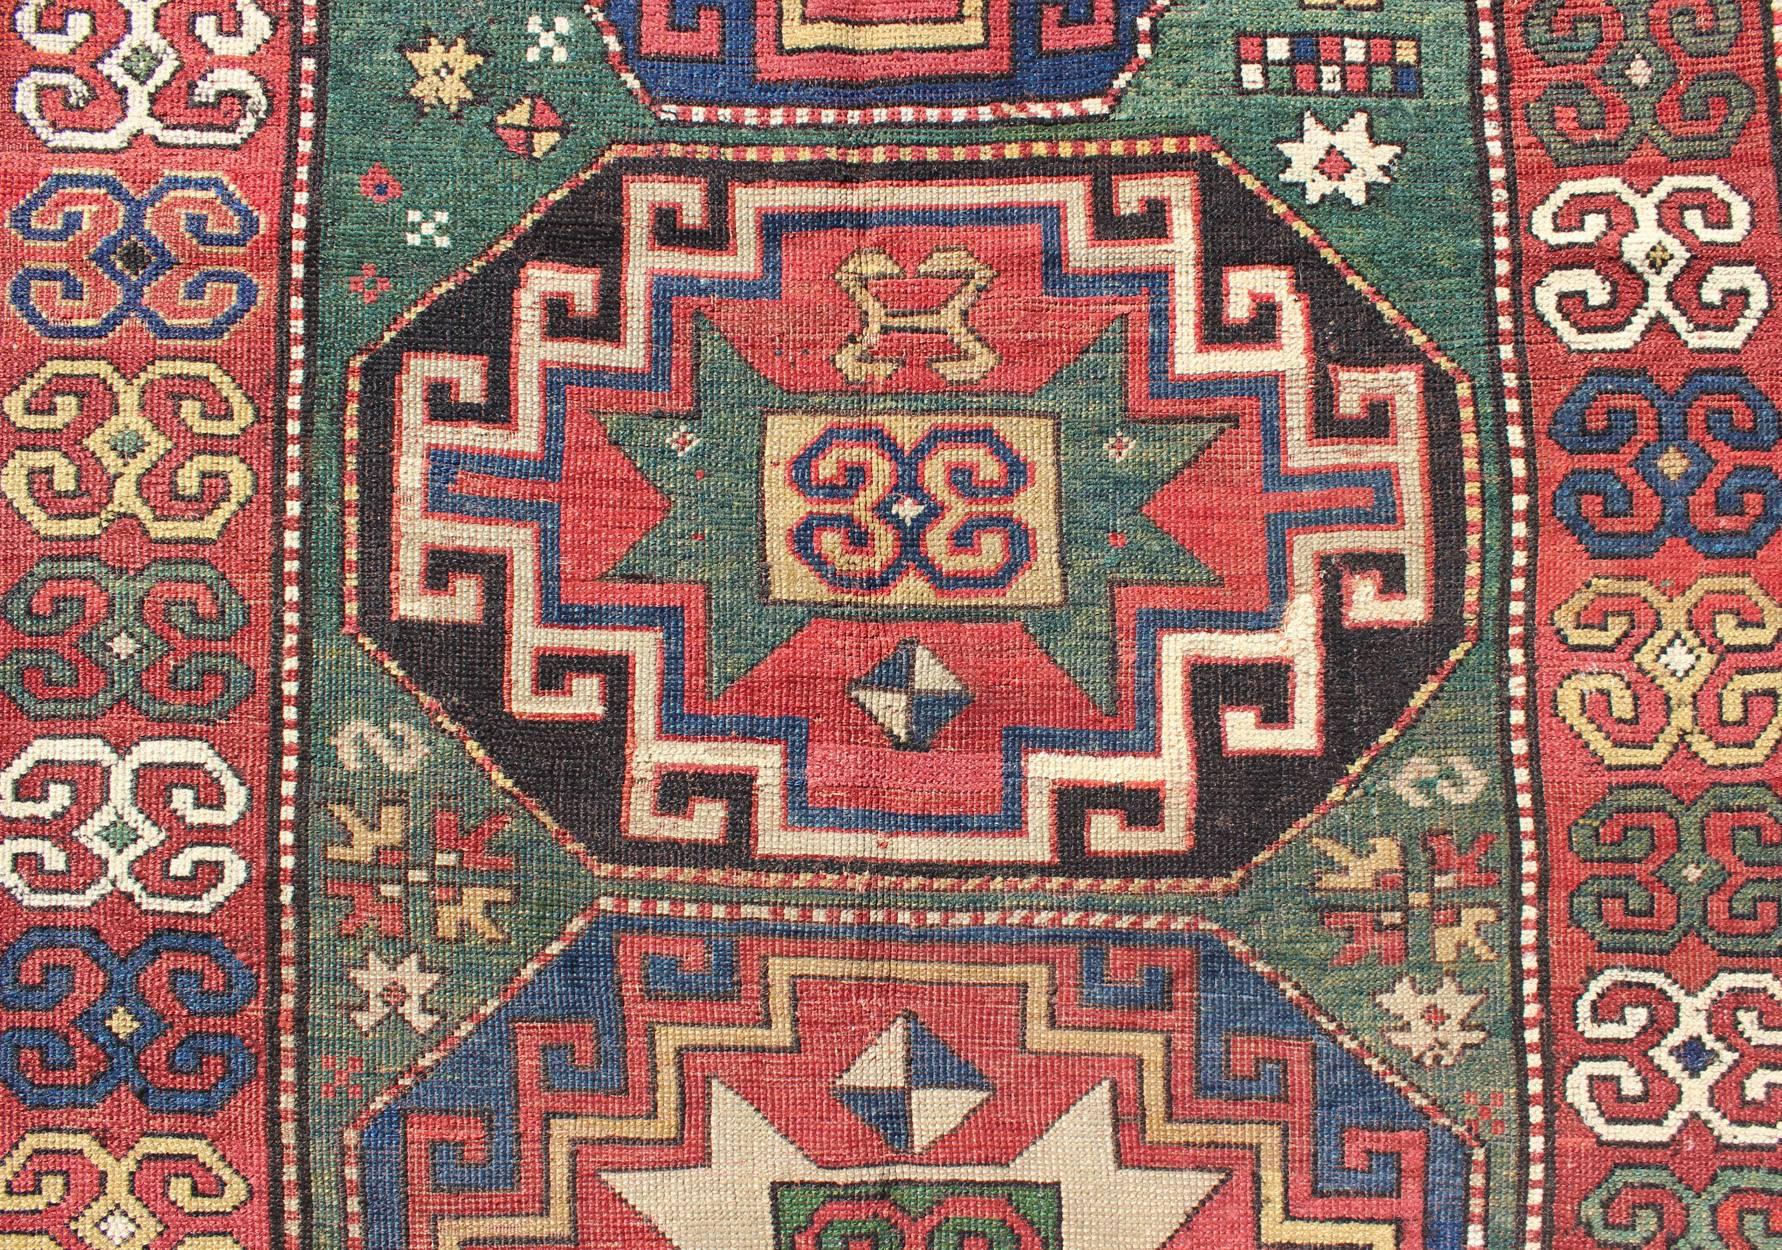 Wool Large Antique 19th Century Southeast Caucasian Bordjalou Kazak Rug in Green, Red